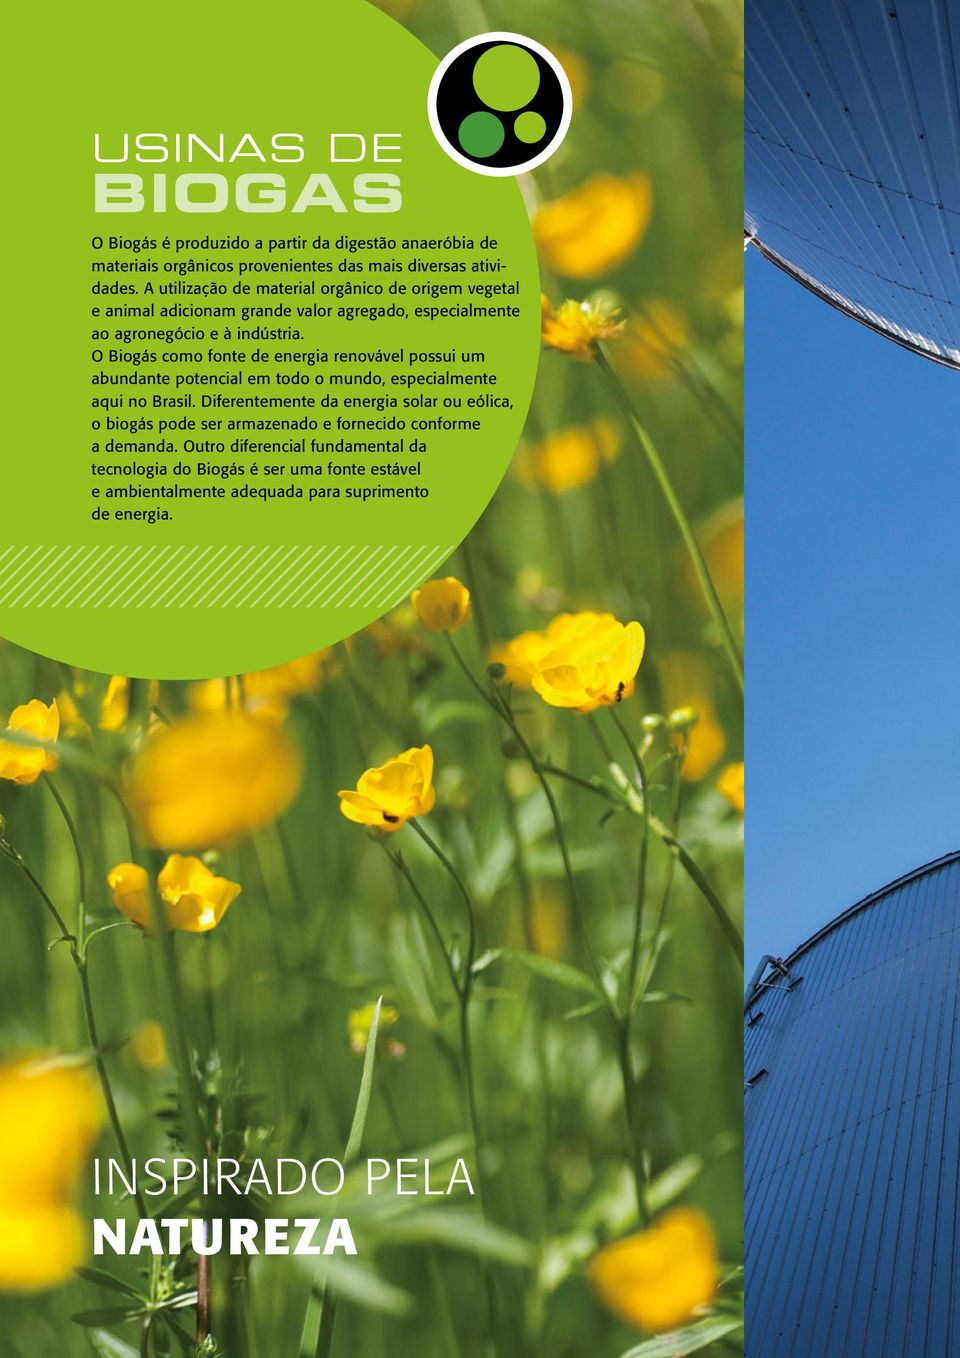 O Biogás como fonte de energia renovável possui um abundante potencial em todo o mundo, especialmente aqui no Brasil.